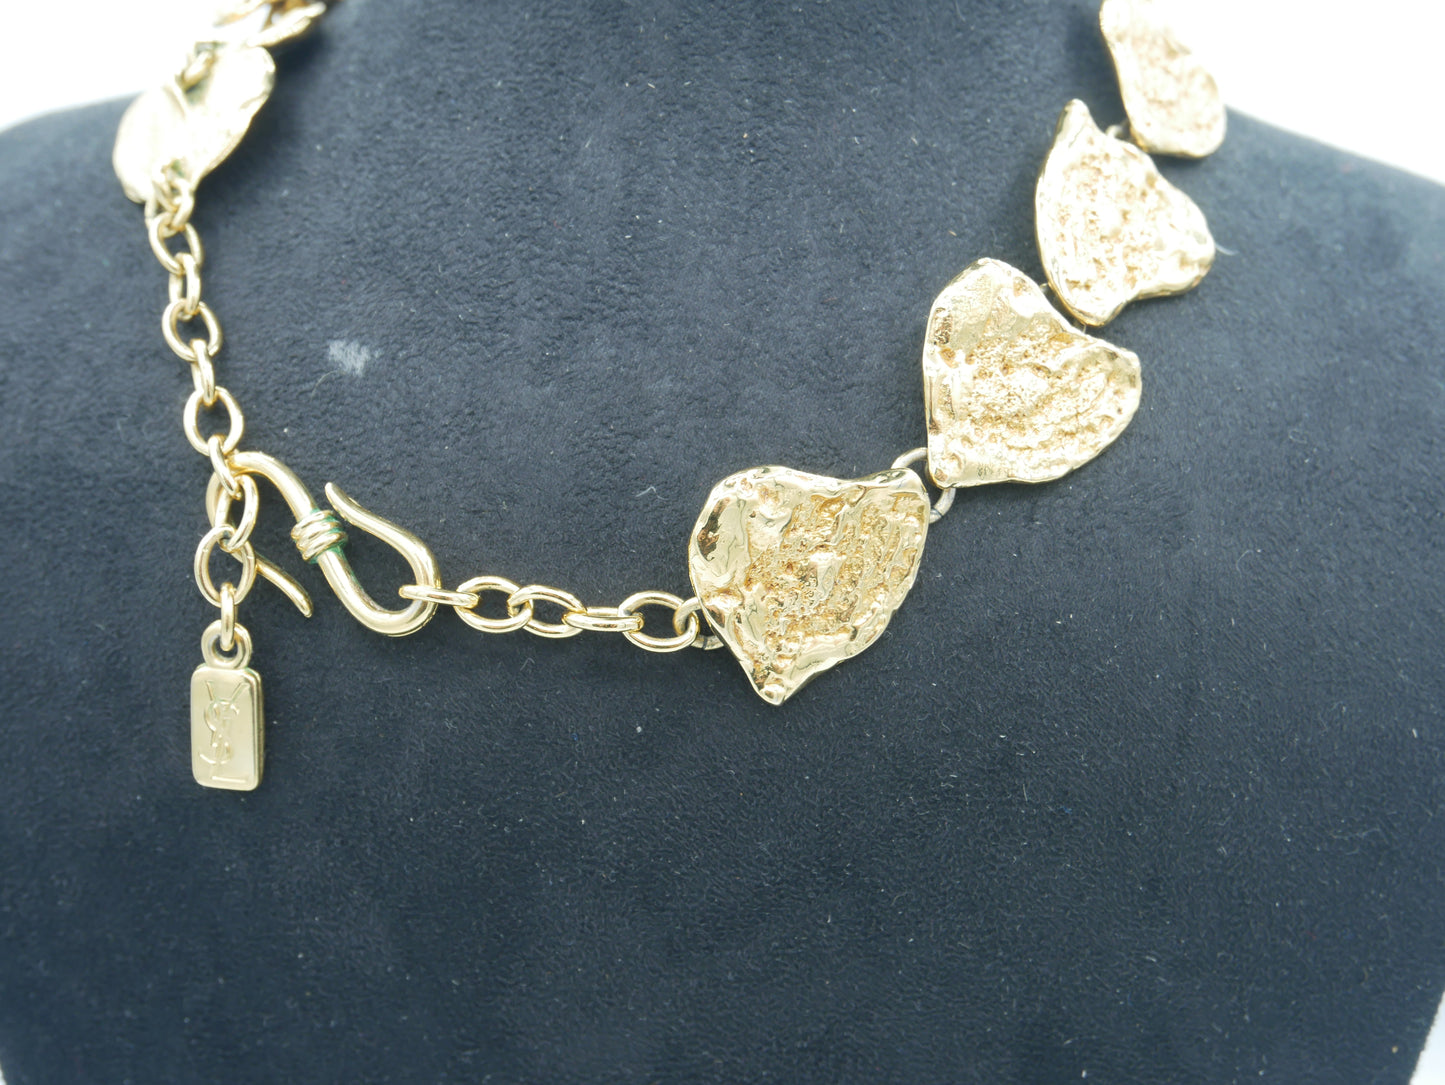 SAINT LAURENT Necklaces vintage Lysis Paris pre-owned secondhand